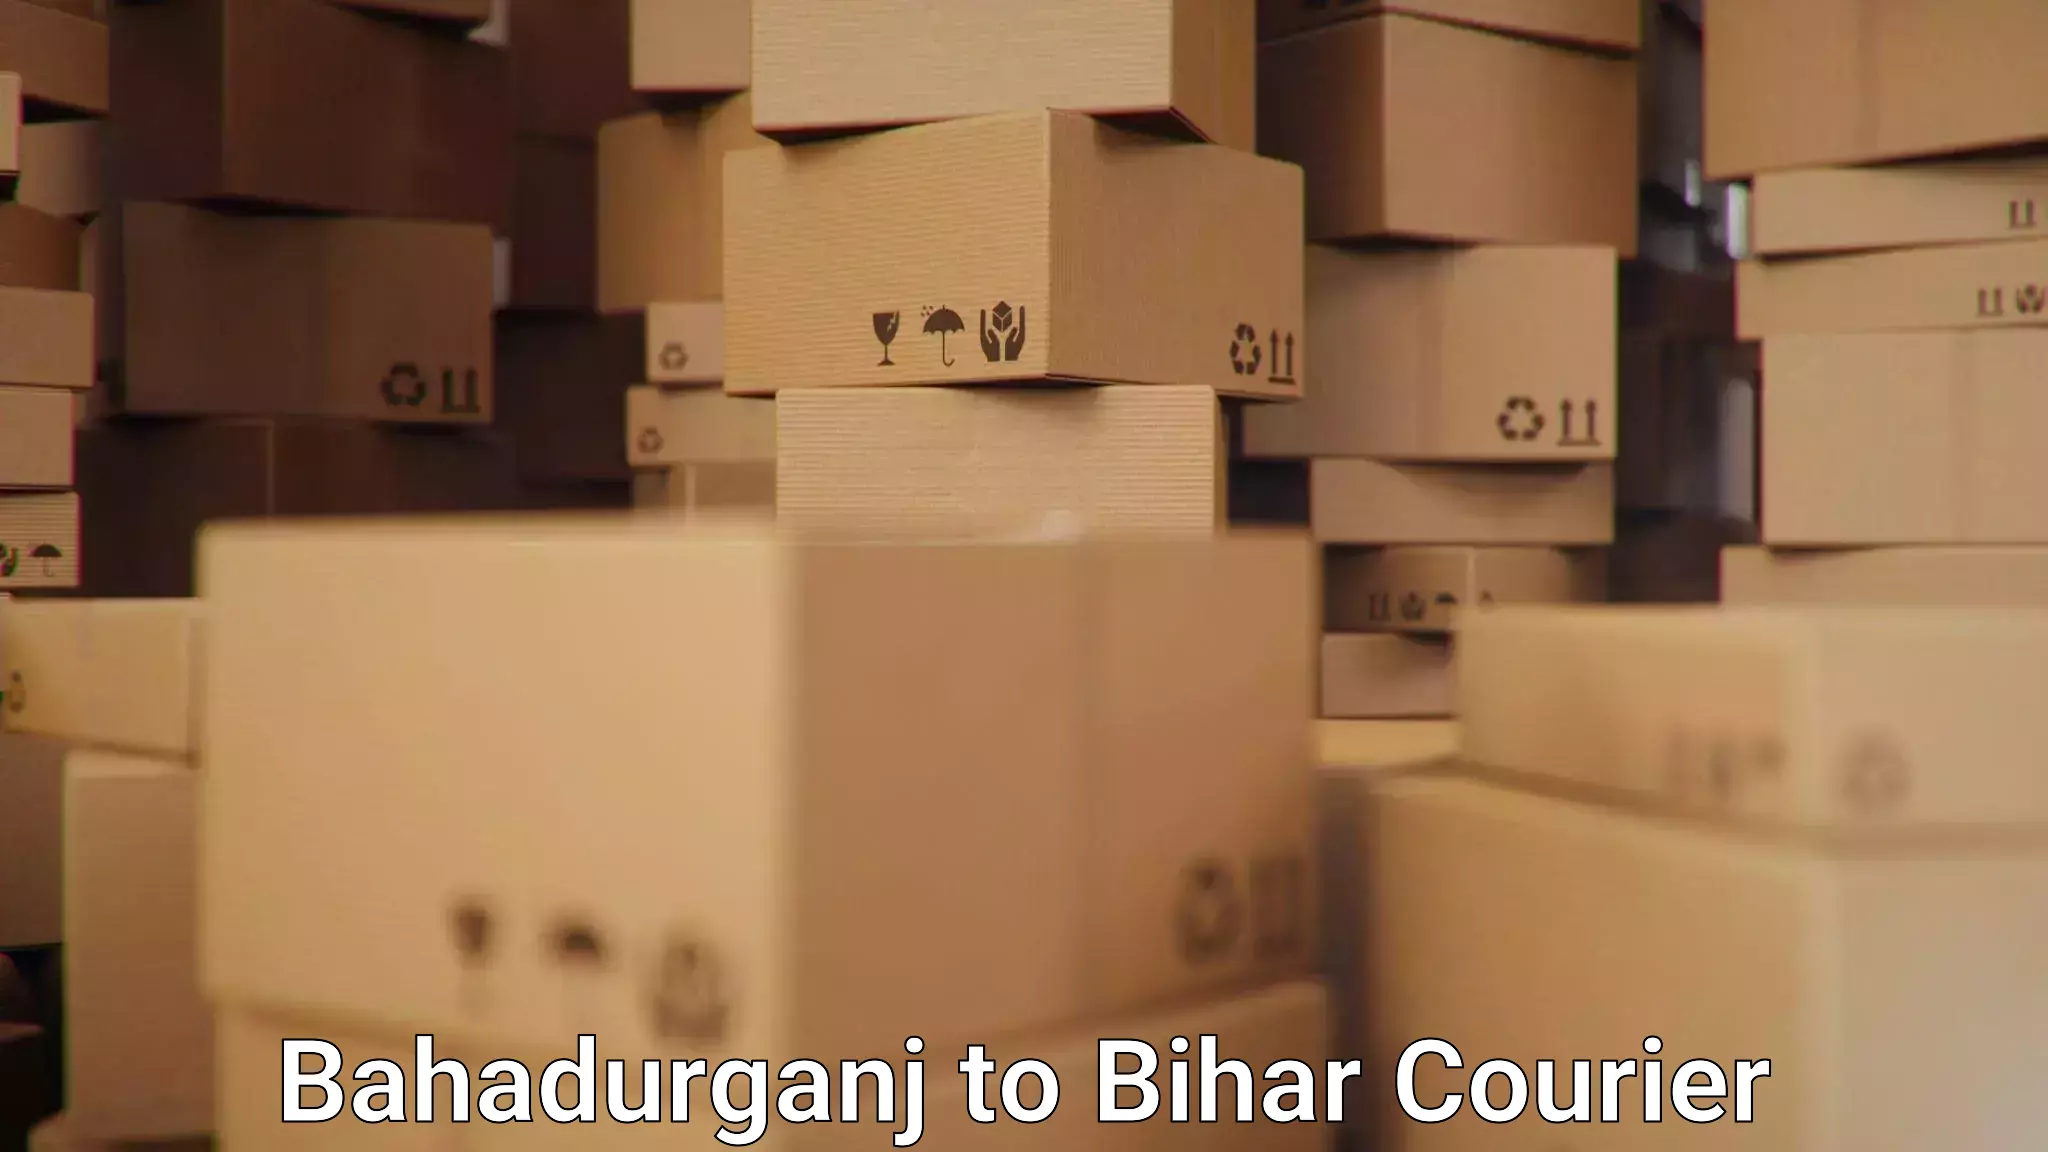 24/7 courier service Bahadurganj to Jagdishpur Bhojpur